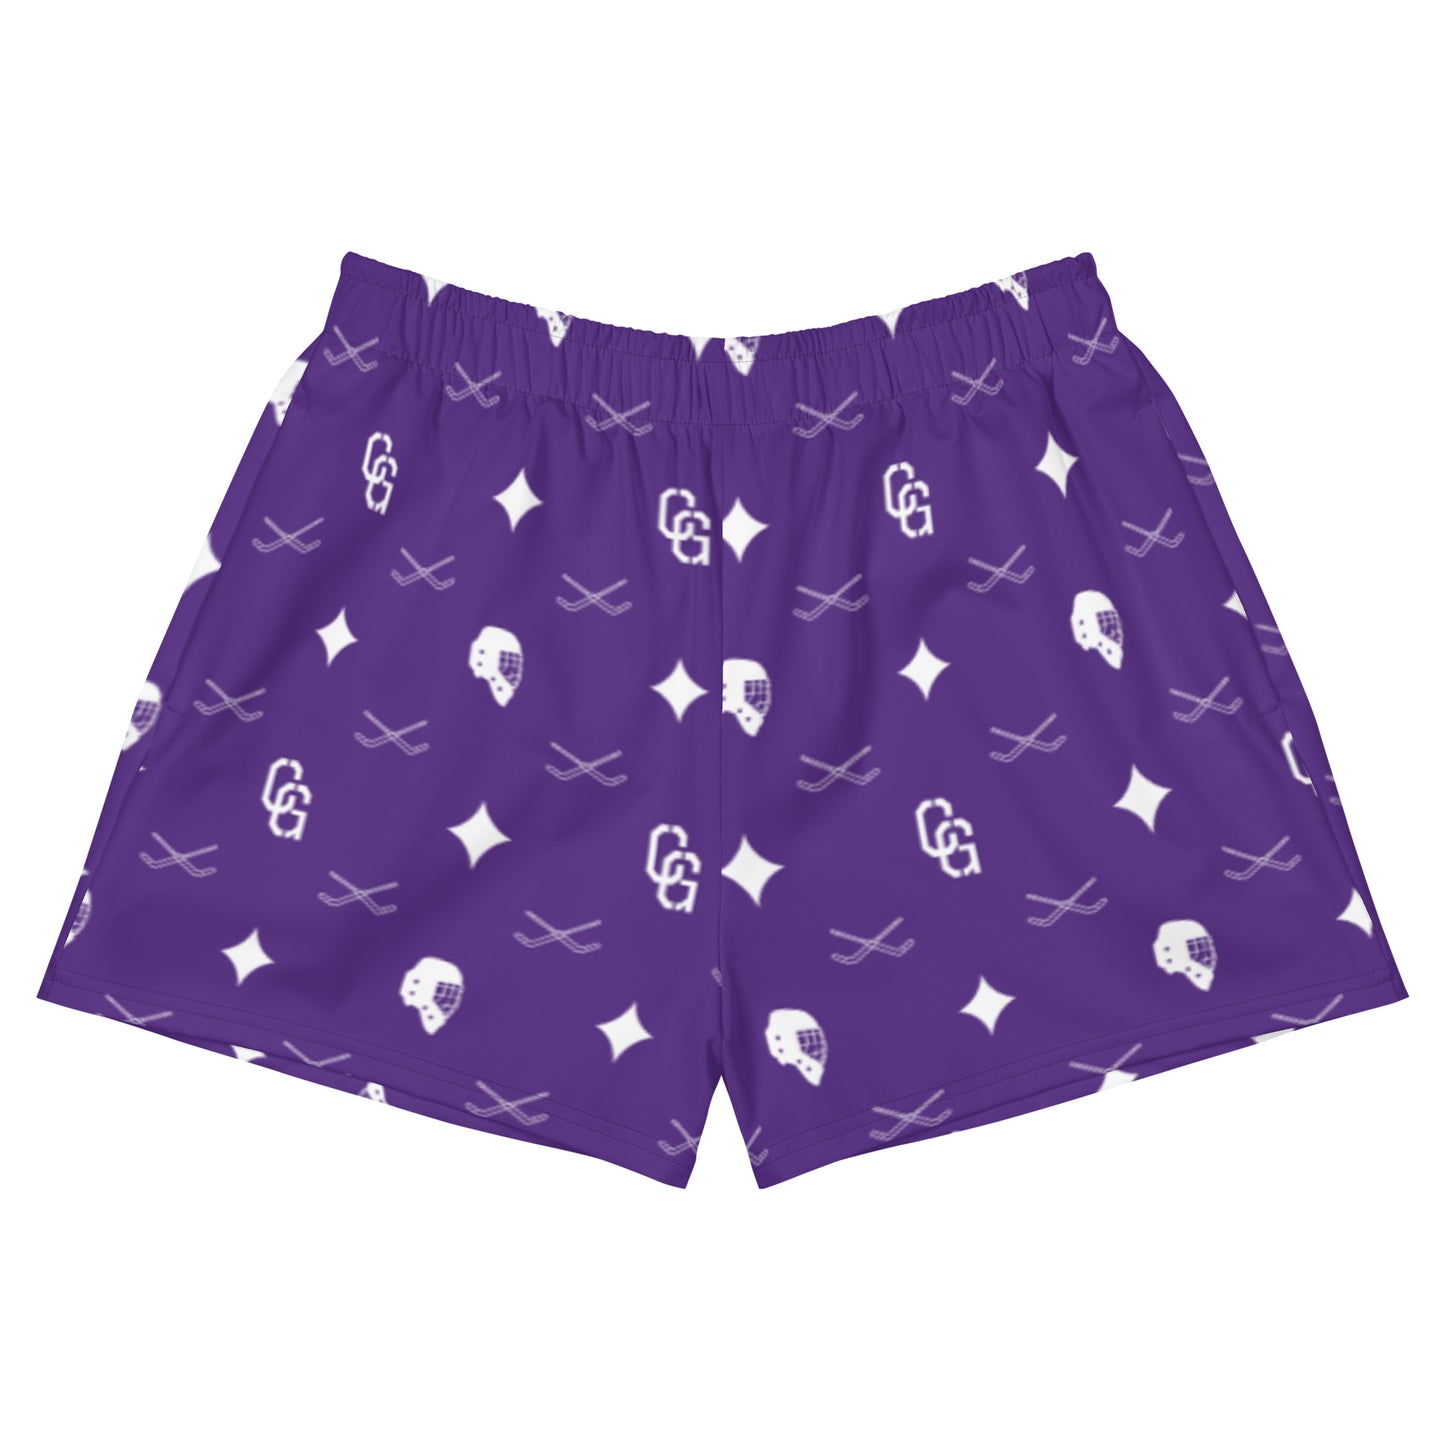 Women's Purple Lux Print Athletic Short Shorts